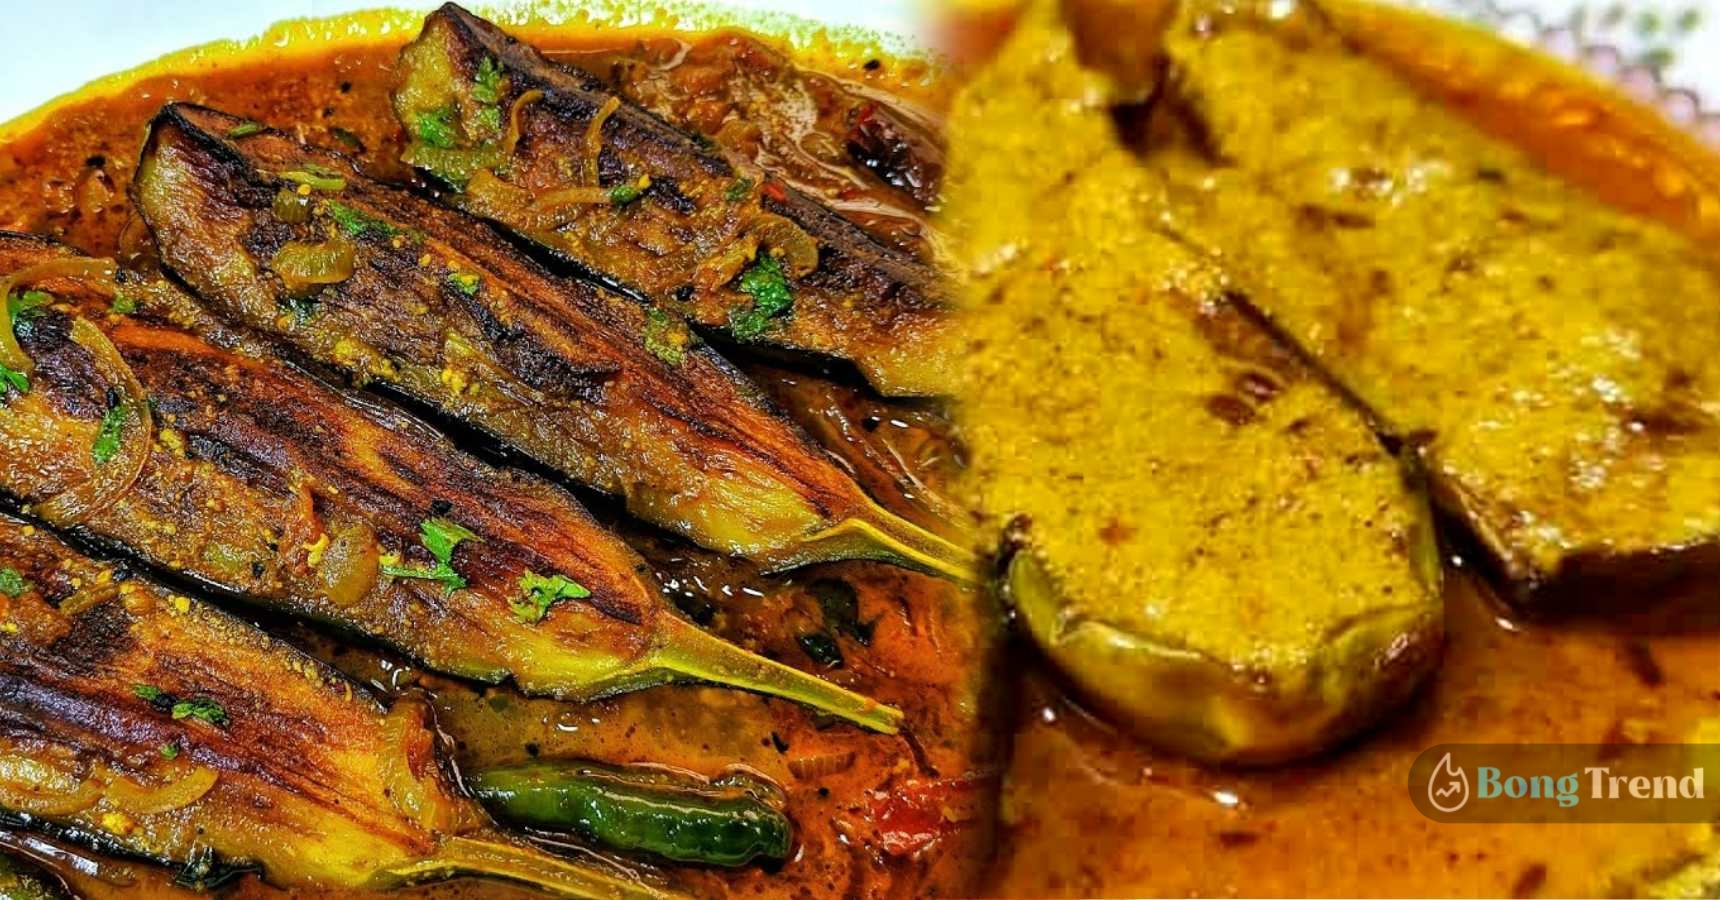 Begun Bahar,Brinjal Recipe,Recipe,বেগুন,বেগুনের রান্না,বেগুন বাহার